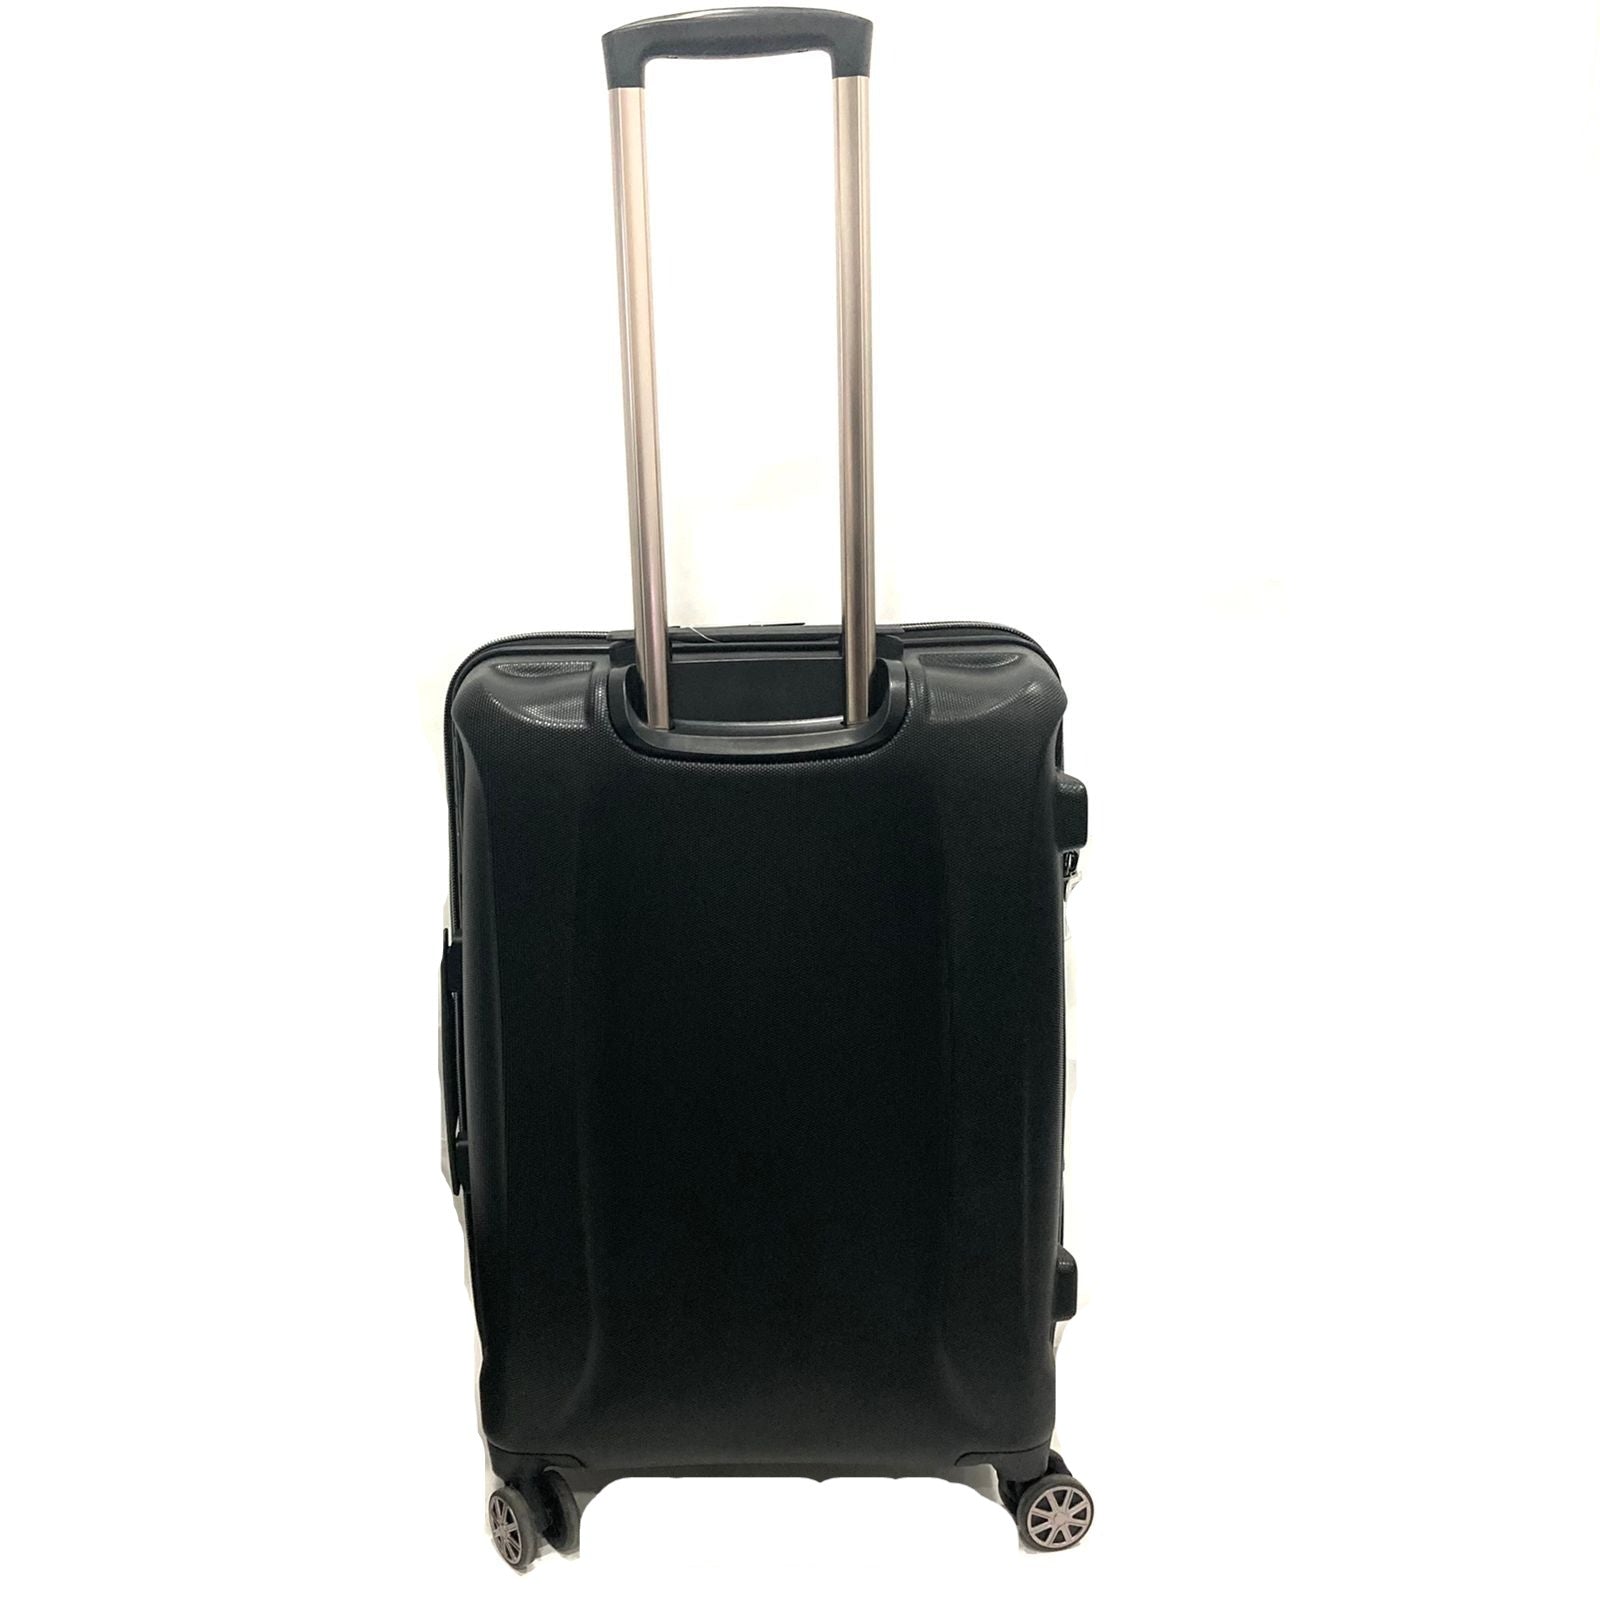 Medium Hard Top Luggage Black